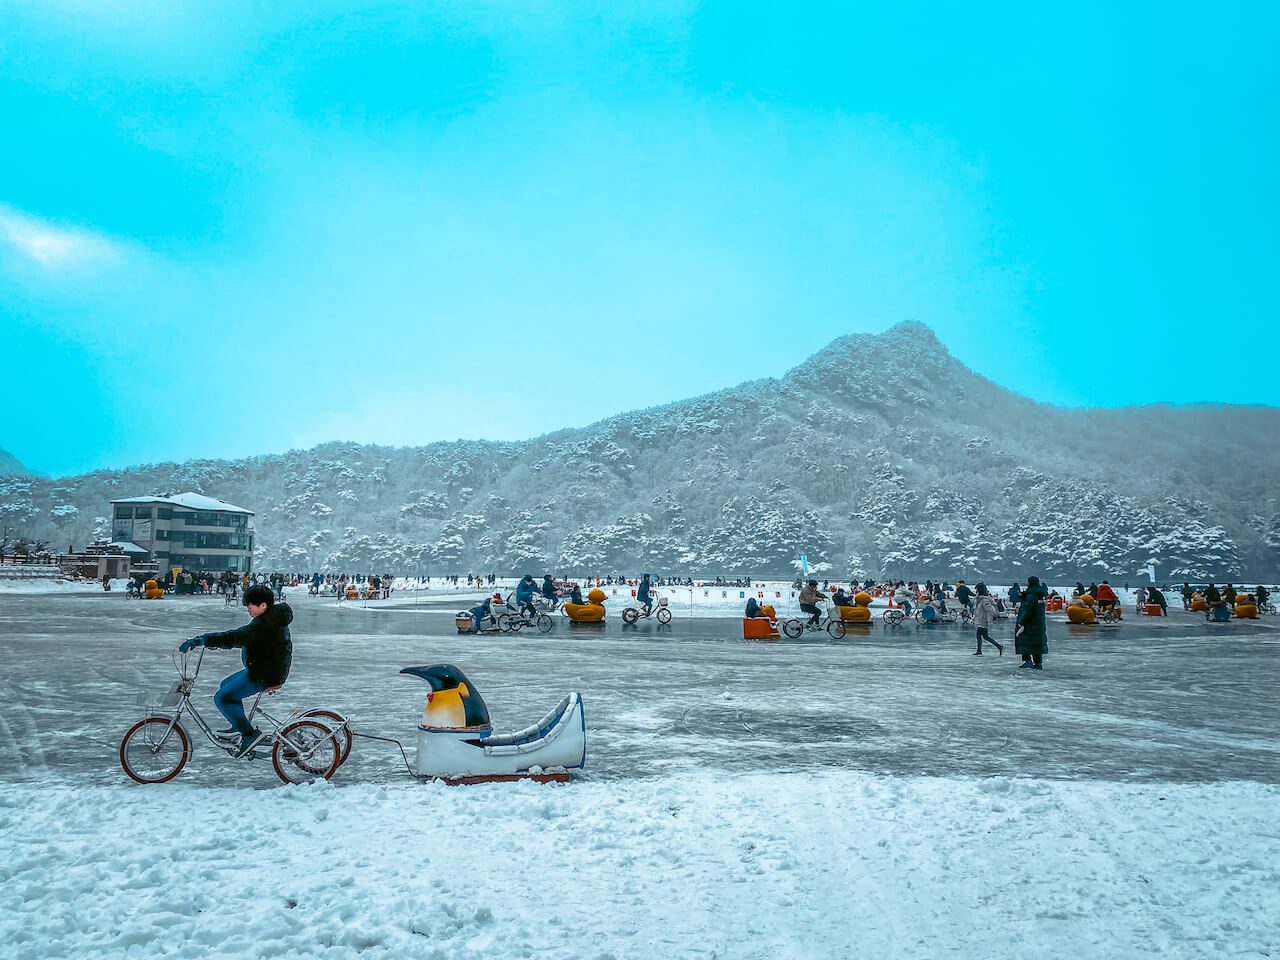 winter in korea | sanjeong lake sledding festival